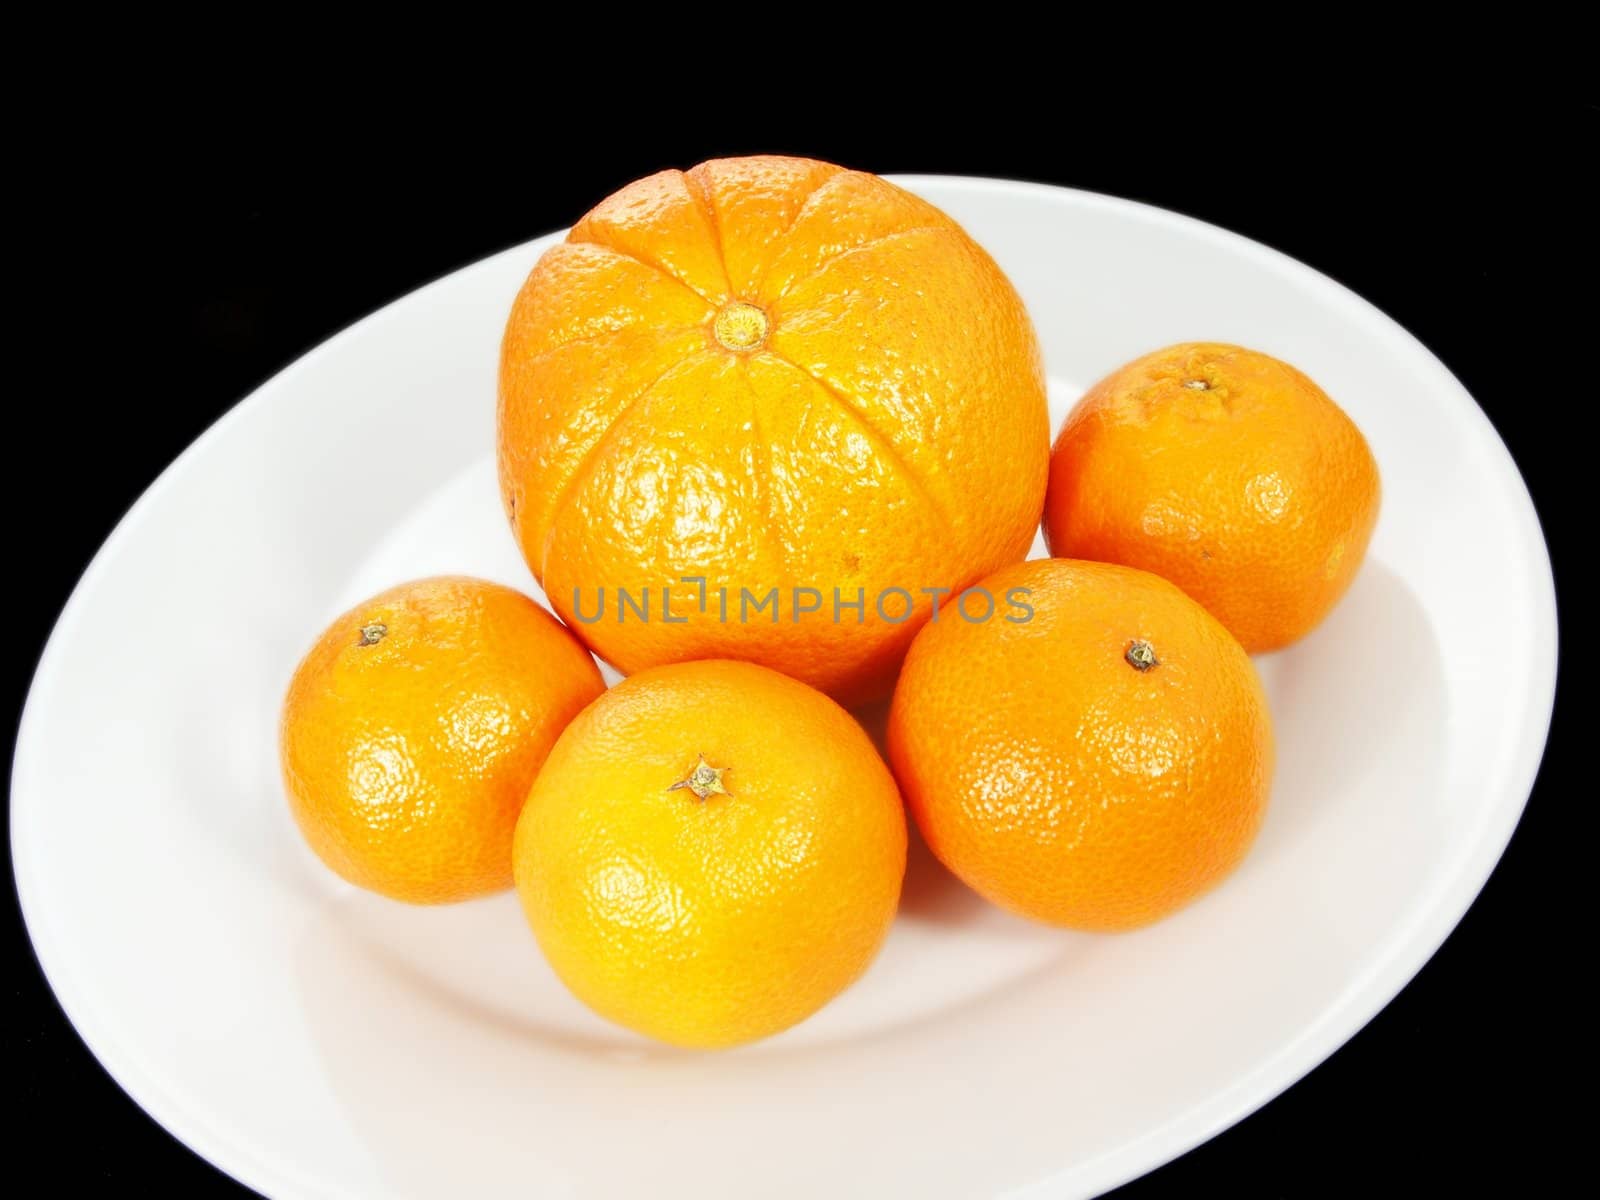 Orange and clementine by Arvebettum